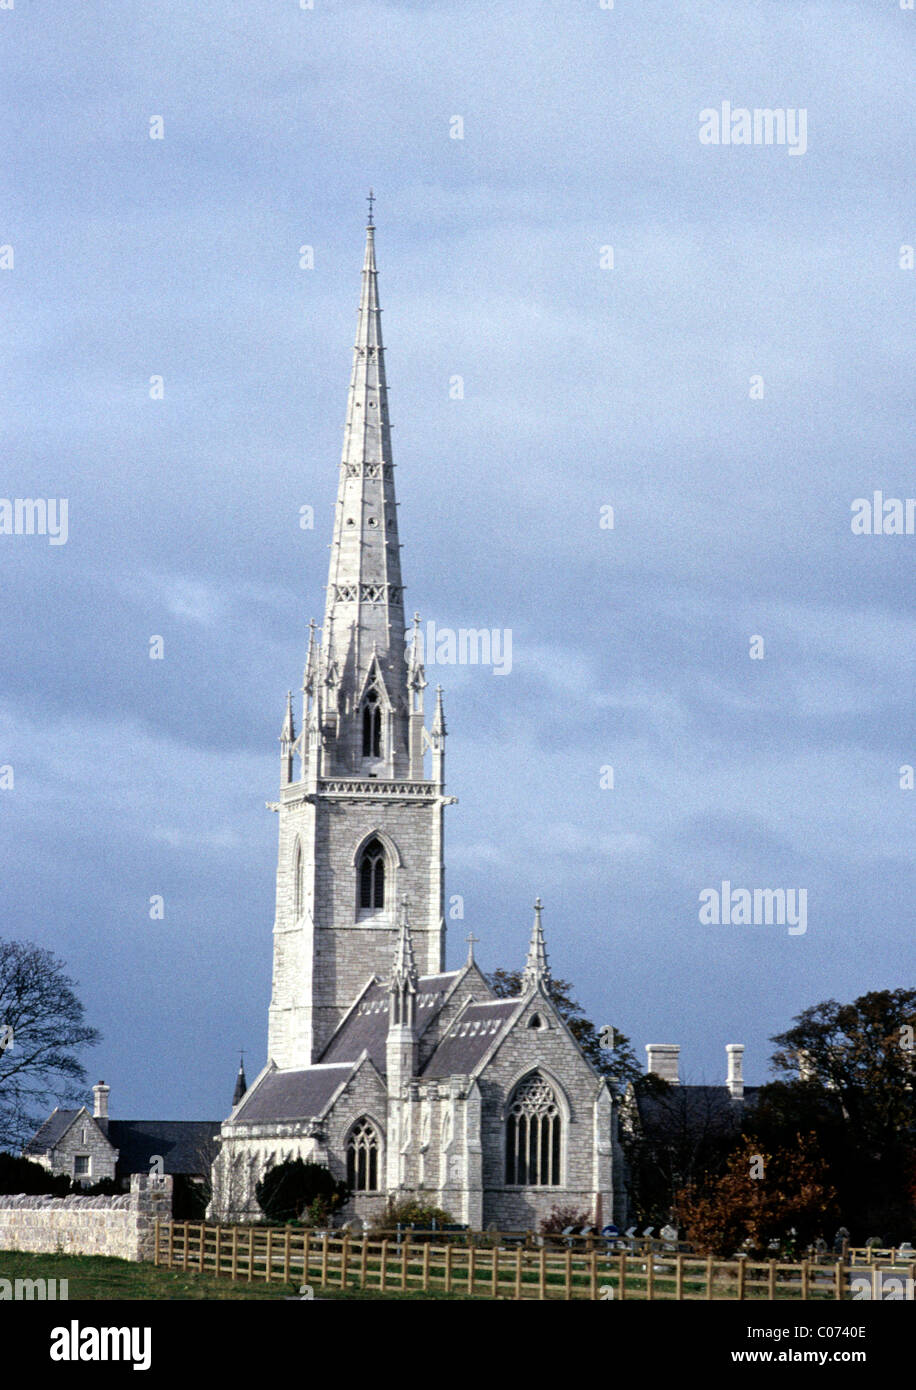 Bodelwyddan Kirche, Wales Walisisch Architektur, Marmor Kirchturm Türme Turm Türme, die britischen UK viktorianische 19. Jahrhundert Kirchen Stockfoto